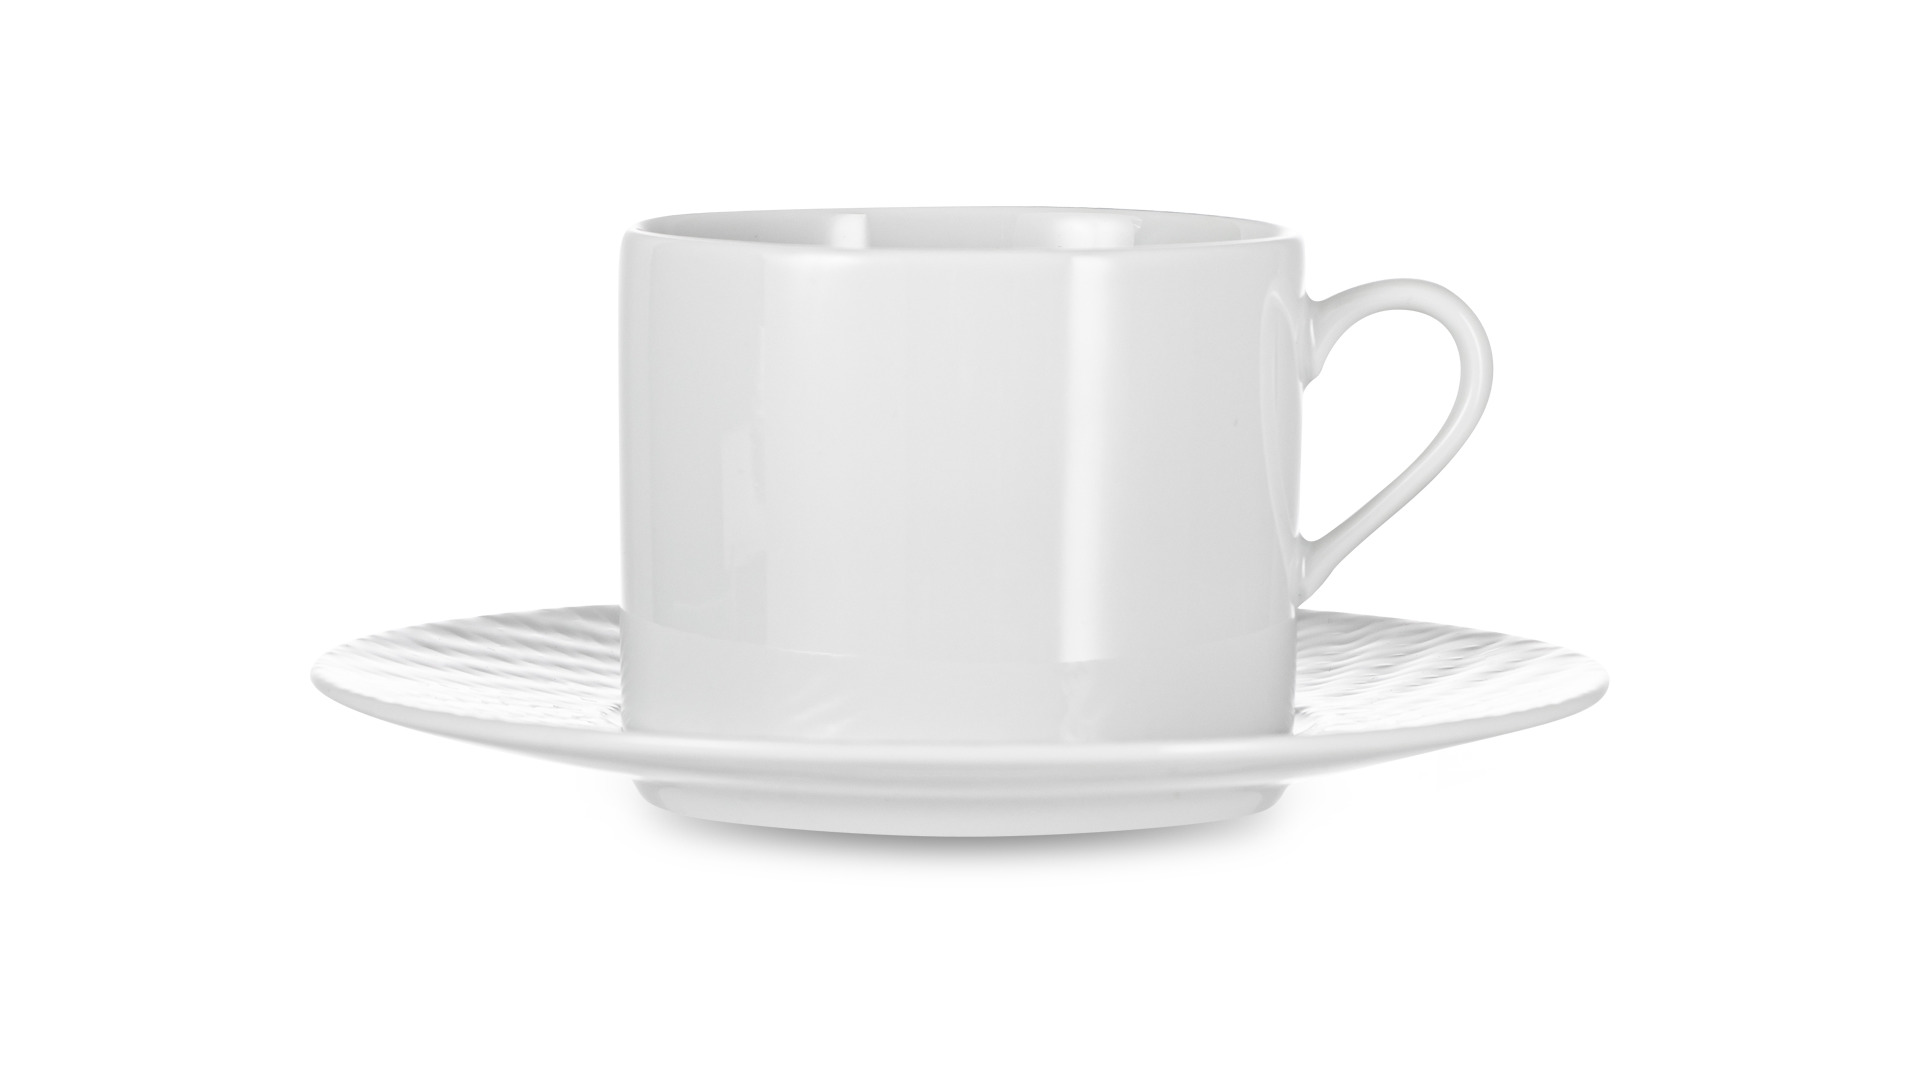 Сервиз чайно-столовый Meissen Игра волн, рельеф, белый  на 2 персоны 12 предметов, фарфор